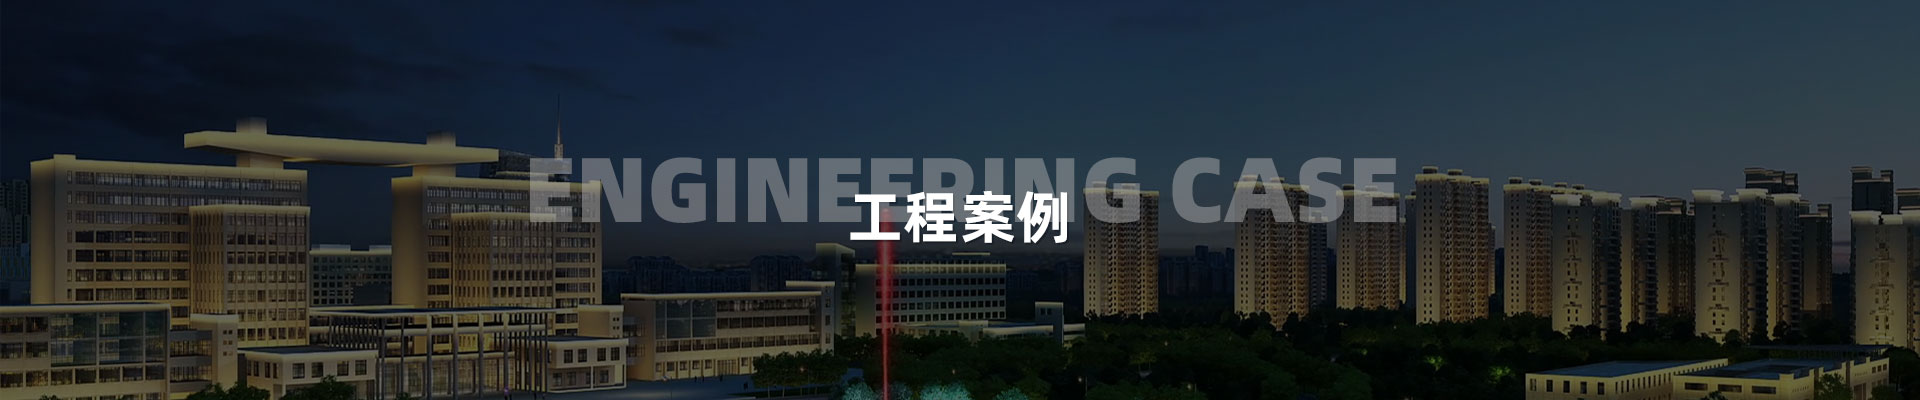 城市規劃-深圳市中筑景觀亮化照明科技有限公司